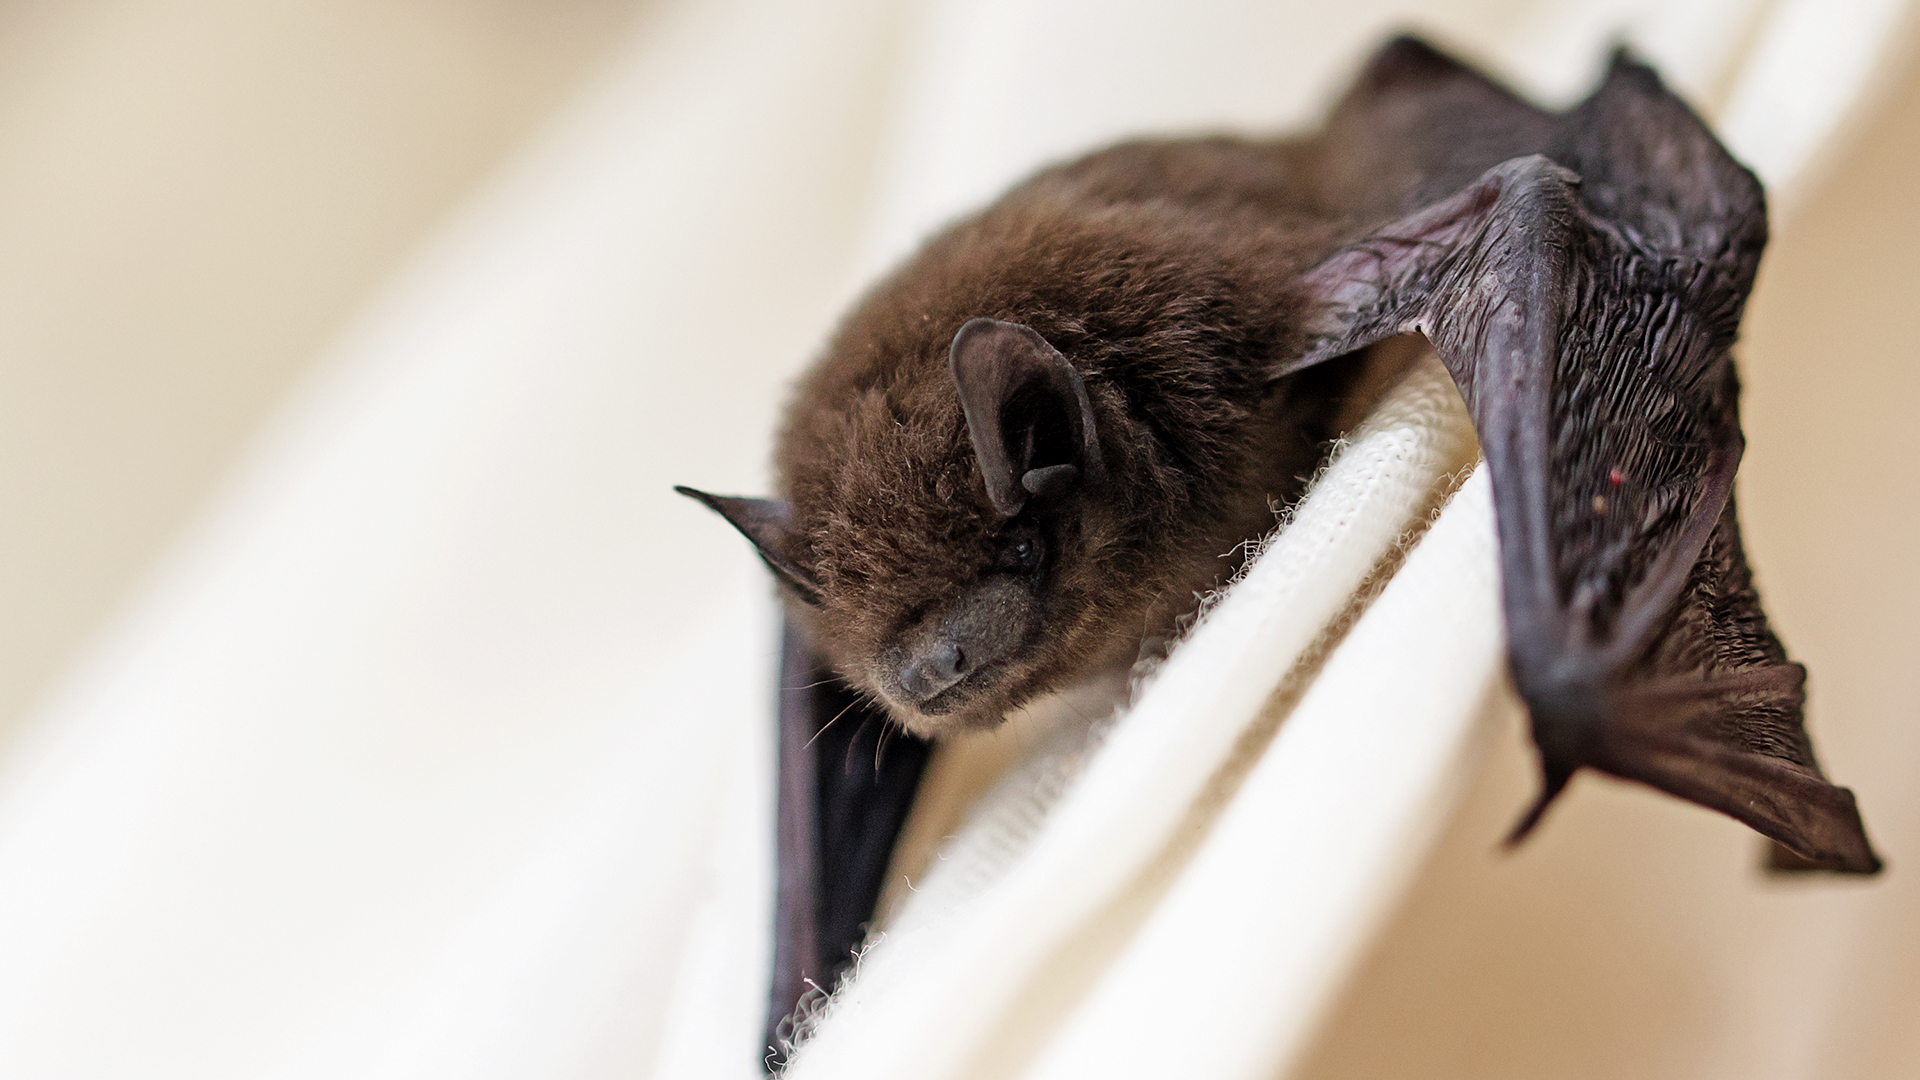 La esperanza de vida de los murciélagos es de 15 años. Algunos pueden vivir más dependiendo de su especie, llegando a 35 años (Getty Images)